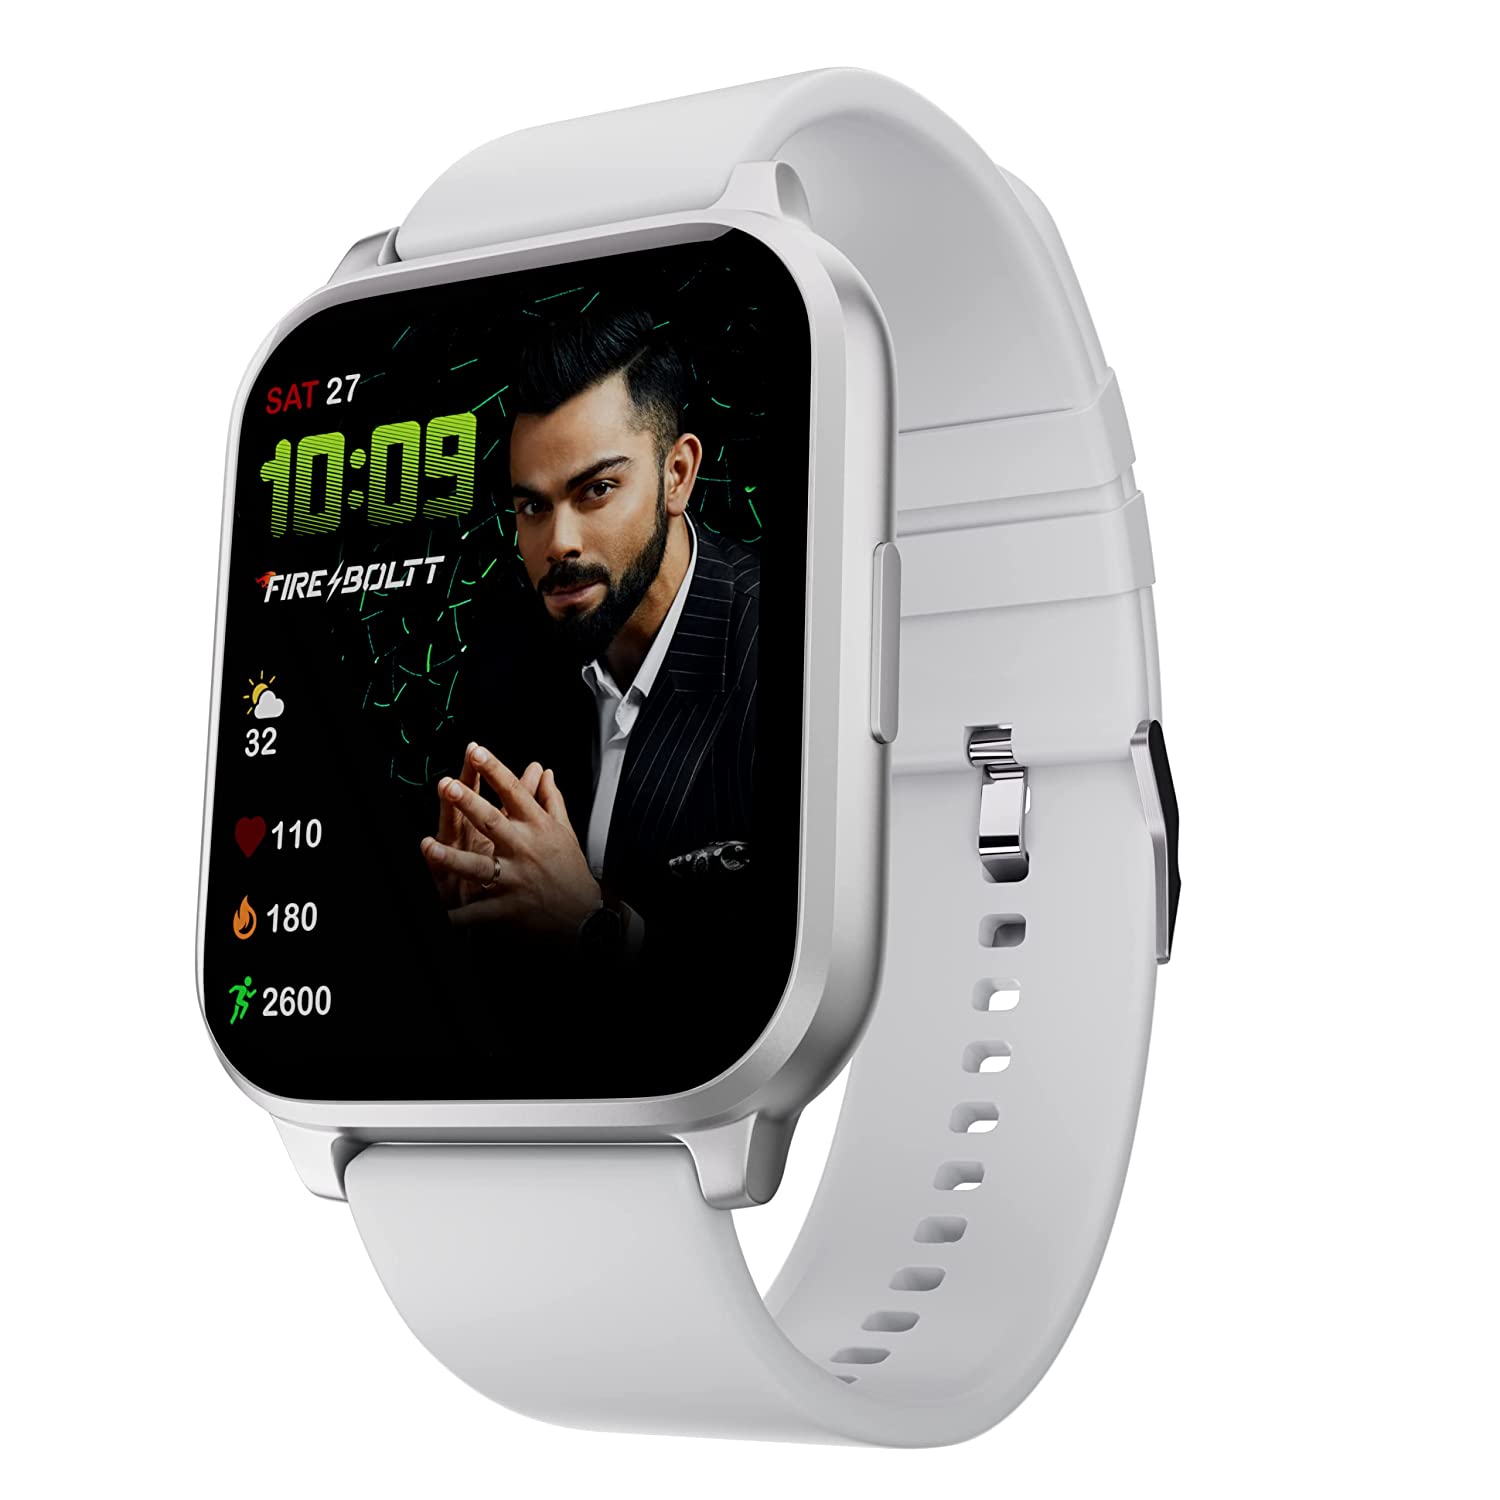 Best Smart Watch Deal: एमेजॉन ग्रेट फ्रीडम फेस्टिवल में इन न्यू लॉन  स्मार्ट वॉच को खरीदें 80% डिस्काउंट पर